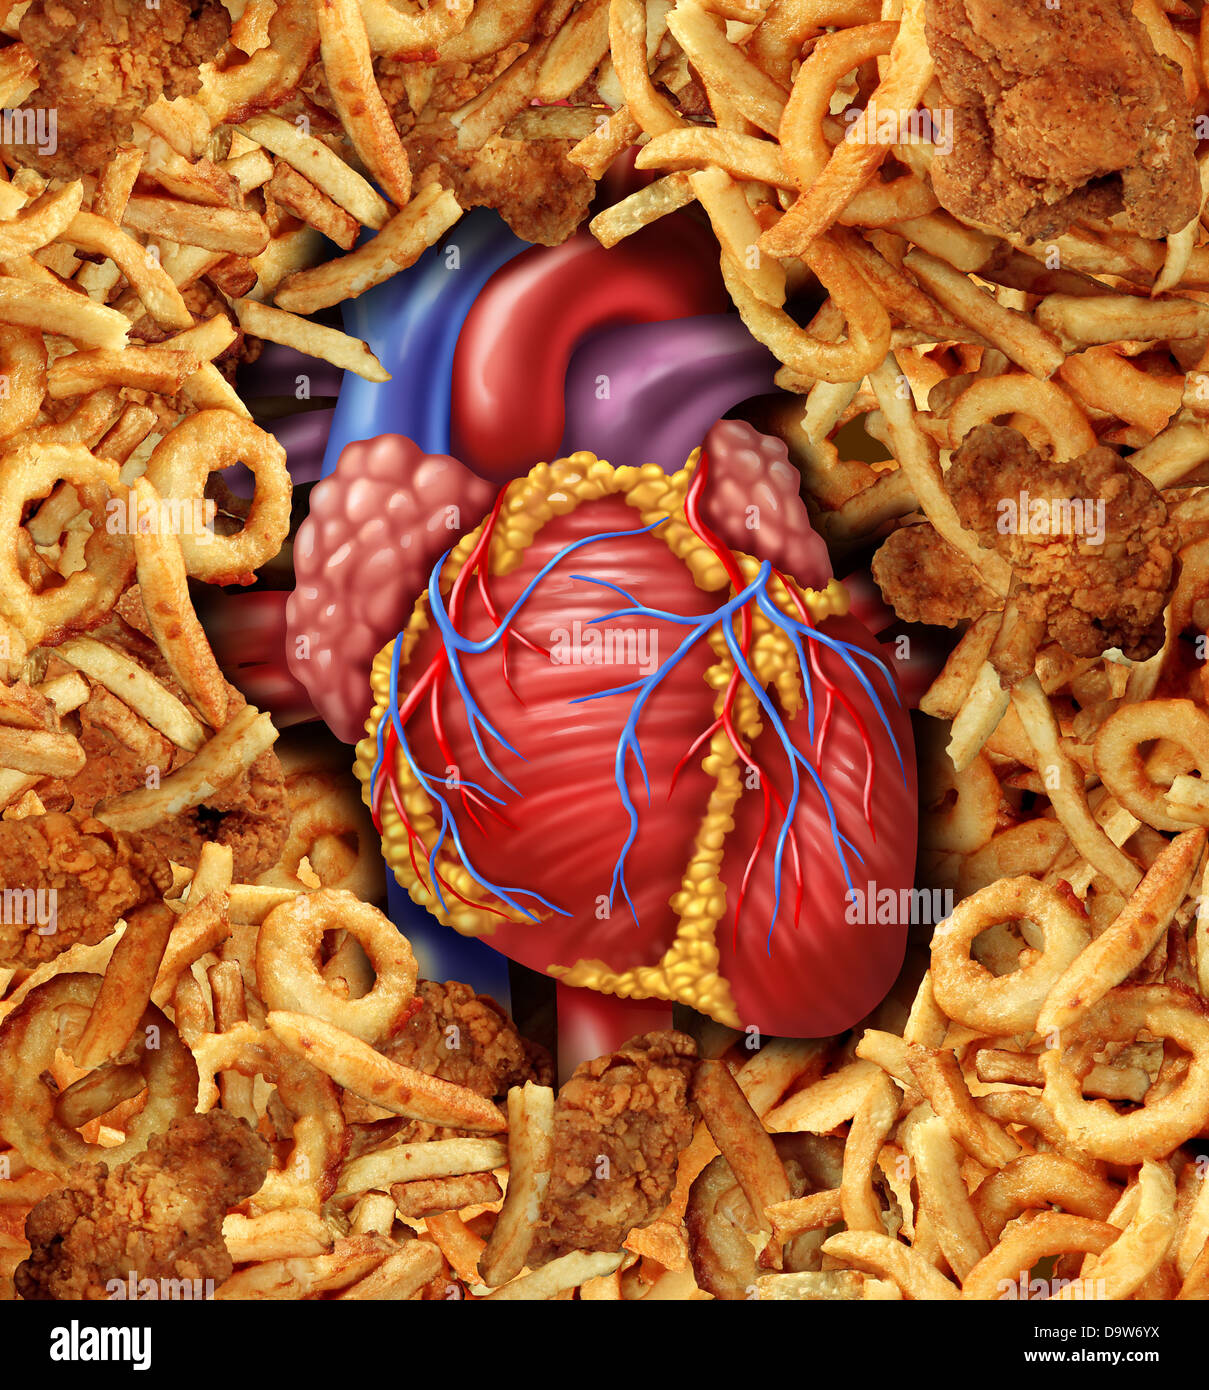 Herz-Kreislauferkrankungen medizinische Gesundheitsversorgung Essenskonzept mit einem menschlichen Herzen Organ umgeben von einer Gruppe von reichen frittiertes fettiges Cholesterin als Symbol der Arterien verstopfen durch Fett in der Ernährung. Stockfoto